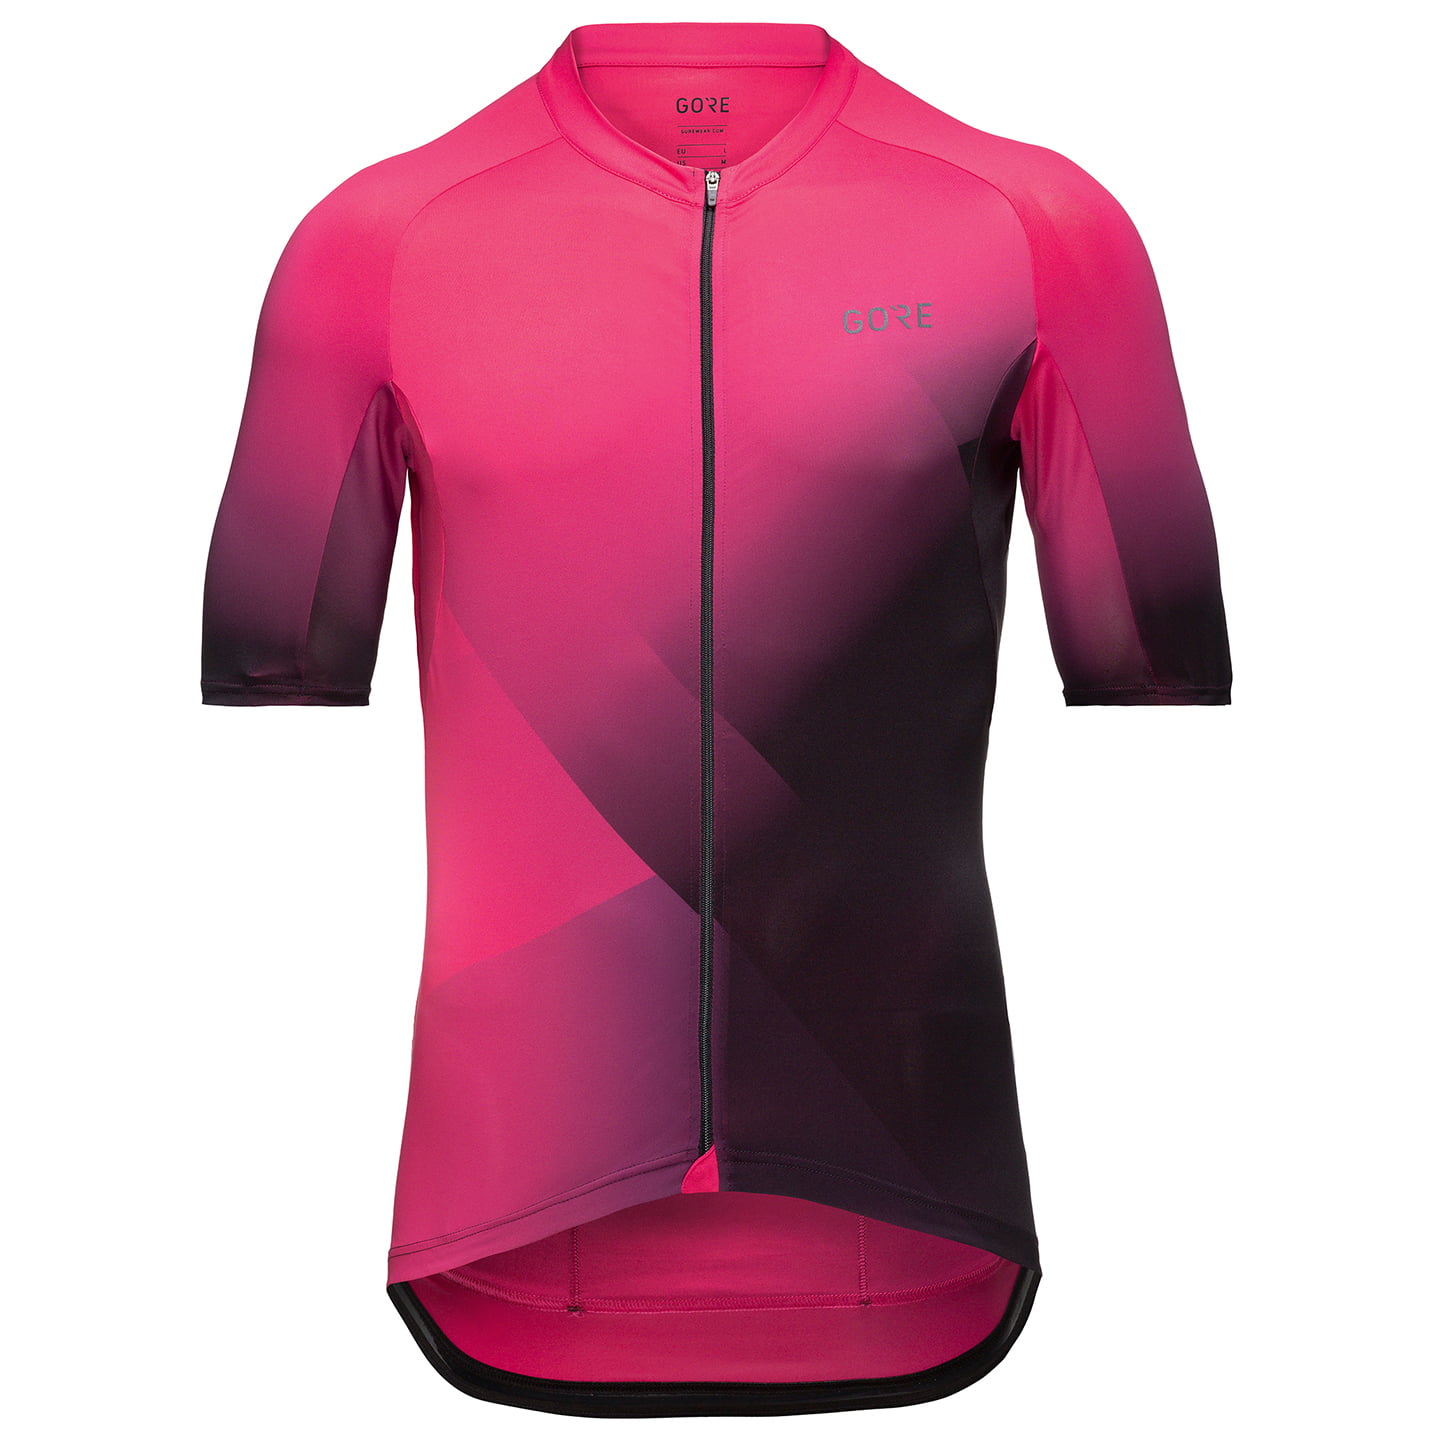 GORE WEAR Fade Short Sleeve Jersey Short Sleeve Jersey, for men, size L, Cycling jersey, Cycling clothing